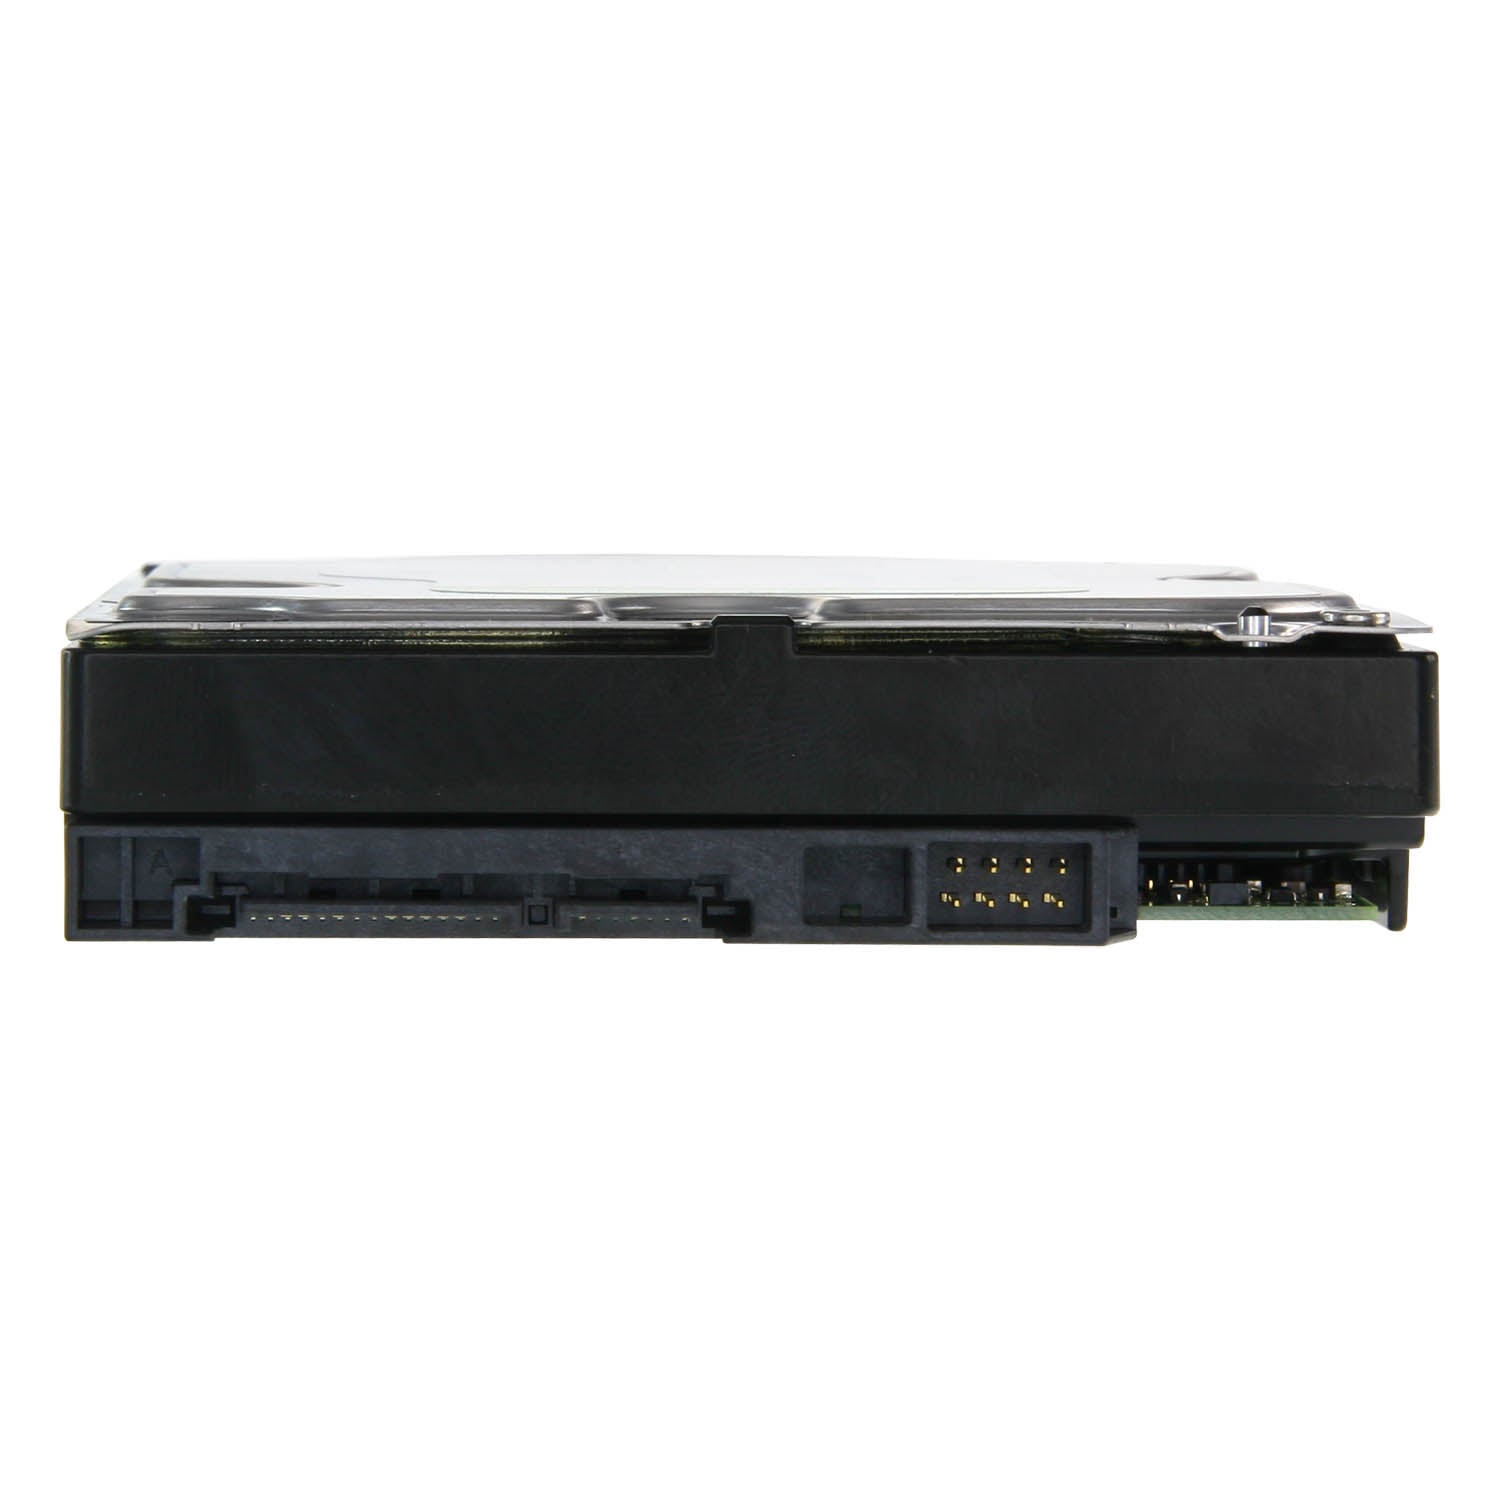 Hard Disk Western Digital - Capacità 6 TB - Interfaccia SATA 6 GB/s - Modello WD60PURX - Speciale per Videoregistratori - Da solo o installato su DVR